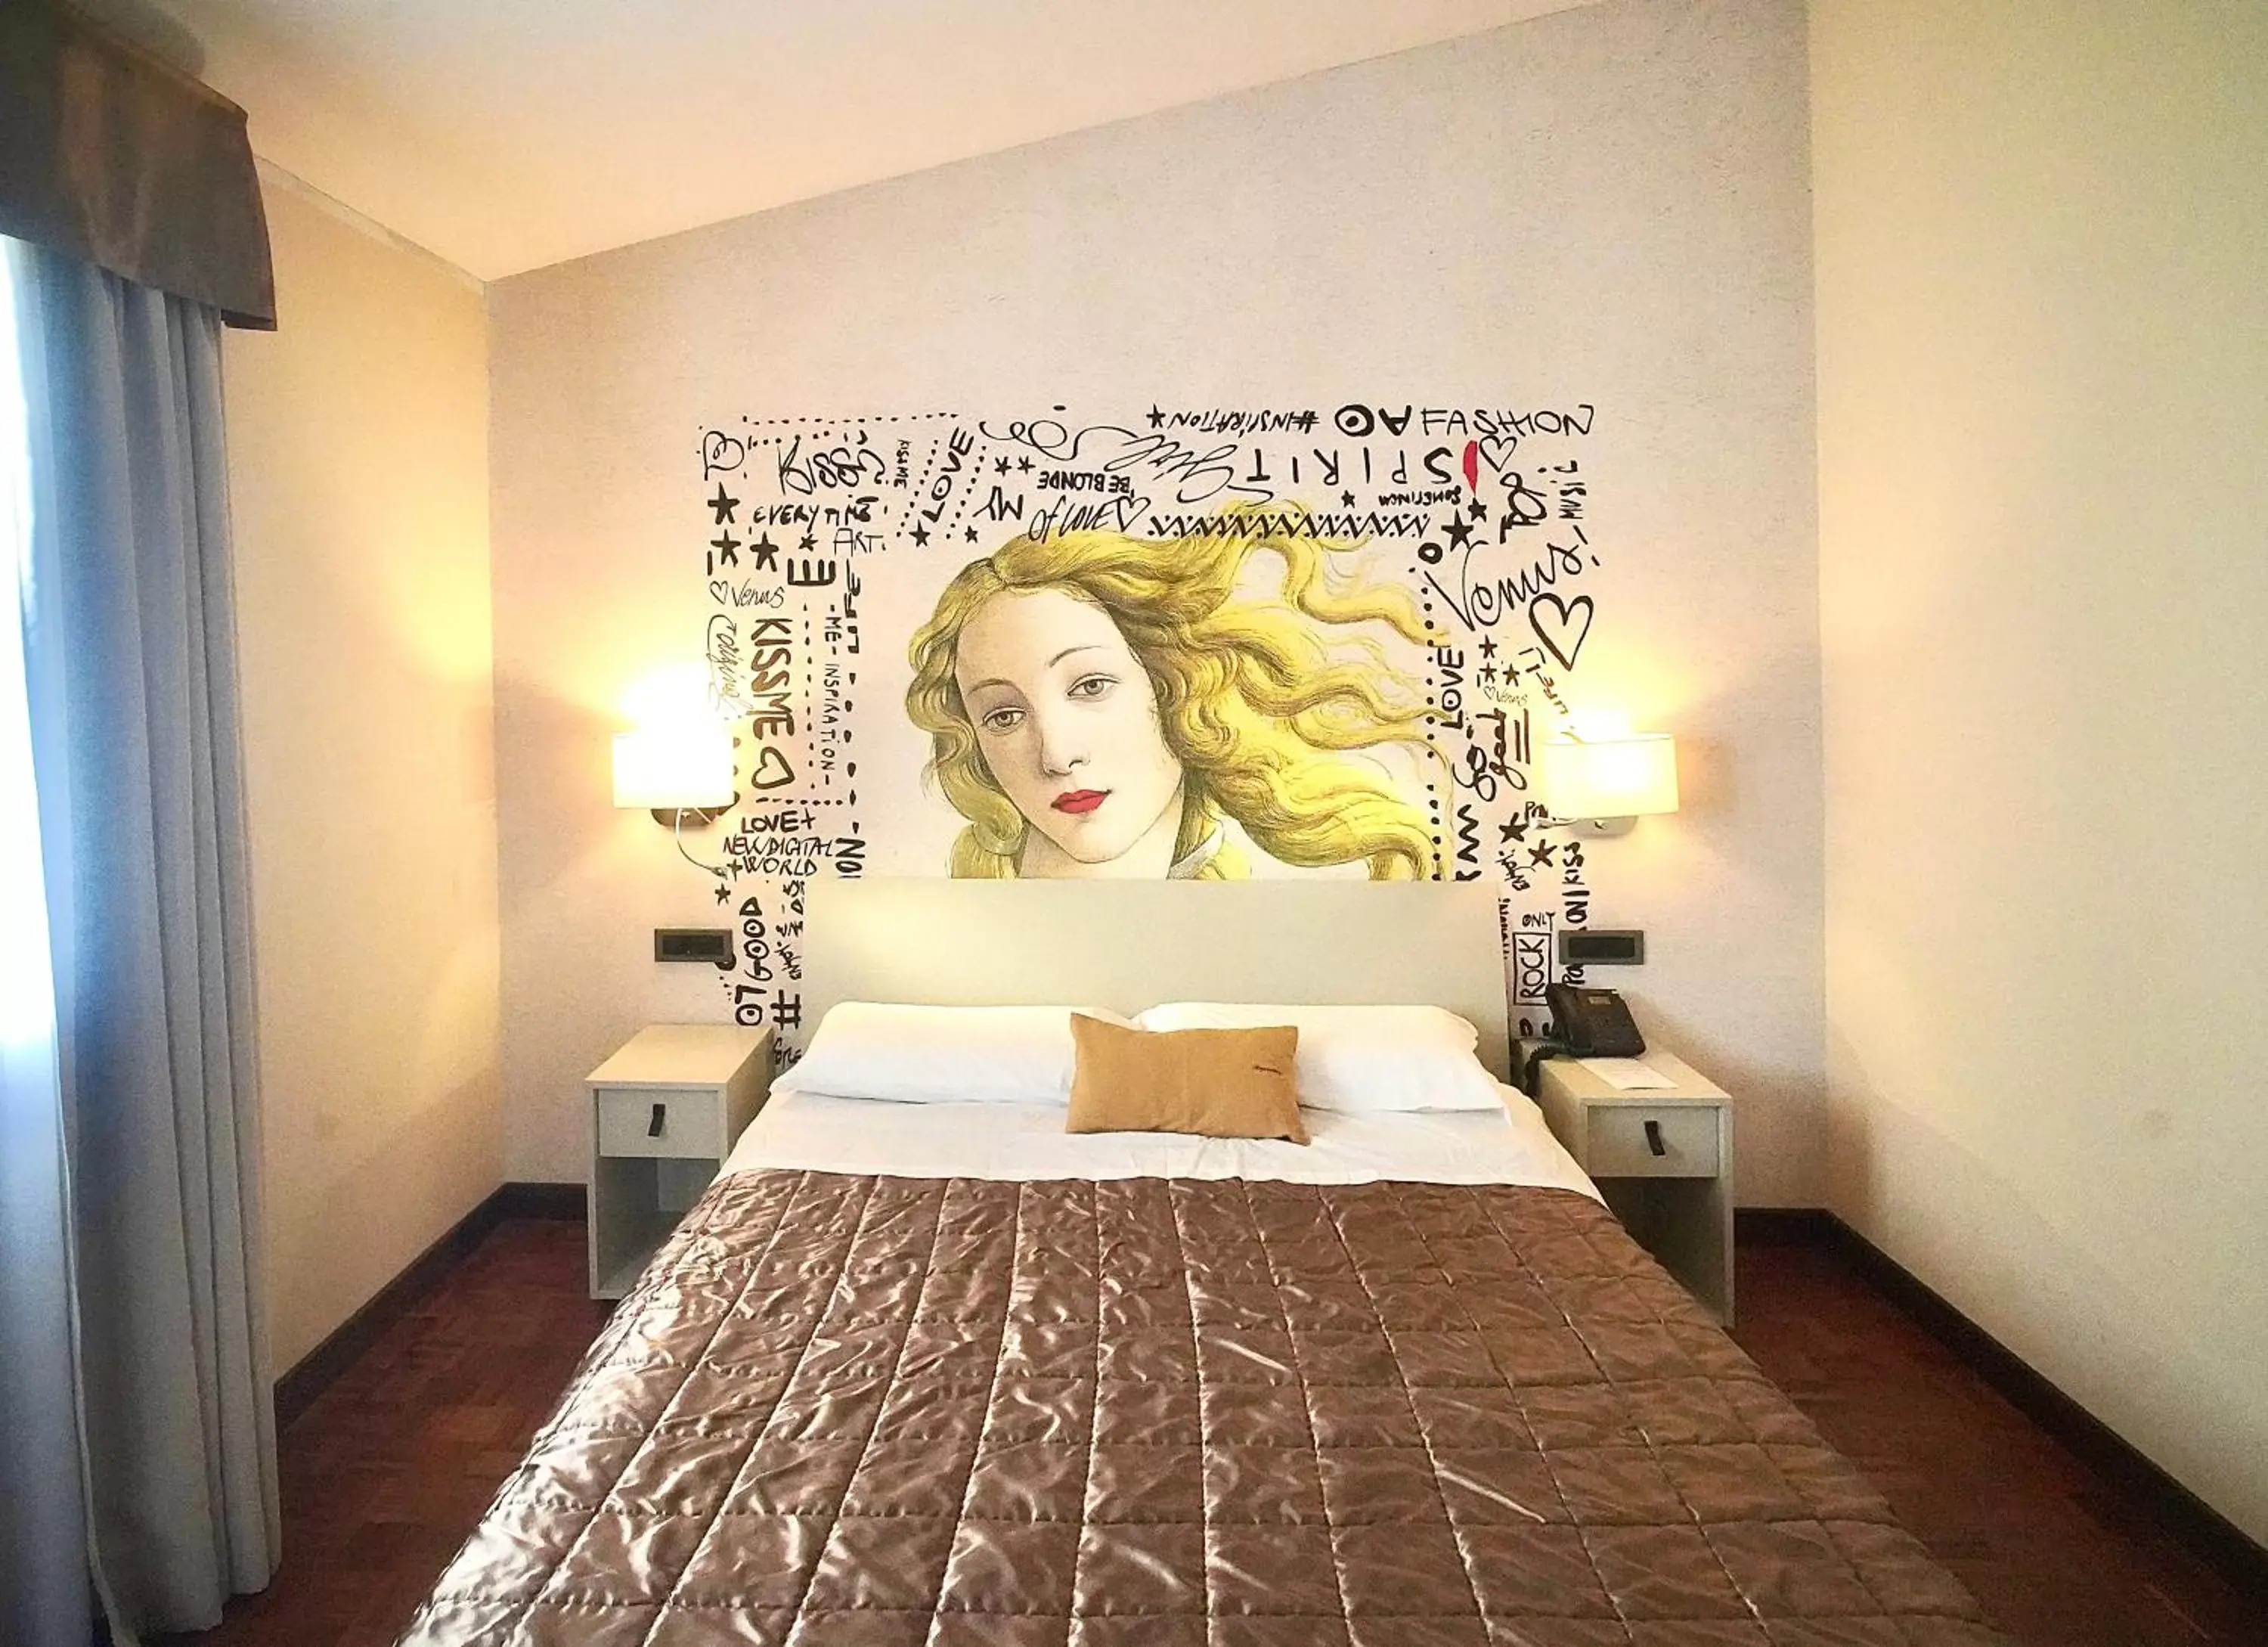 Bed in Tramas - Ospitalita' del Conte Hotel & Spa